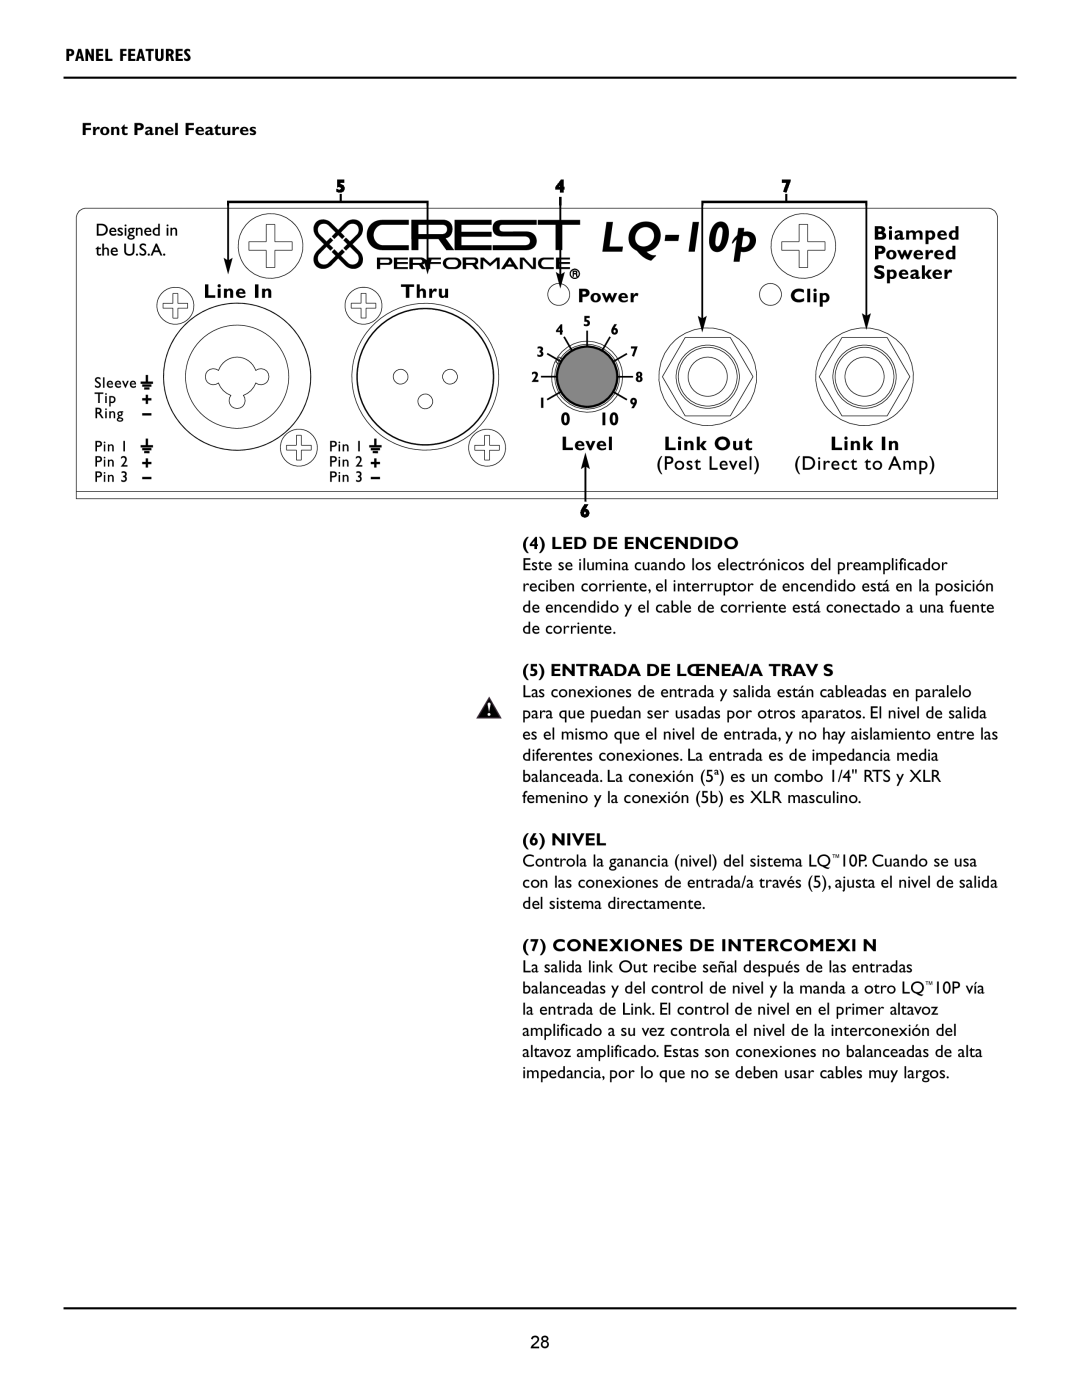 Crest Audio LQ 10P 6 4 LED DE ENCENDIDO, Entrada De Lœnea/A Trav S, Nivel, Conexiones De Intercomexi N, Panel Features 